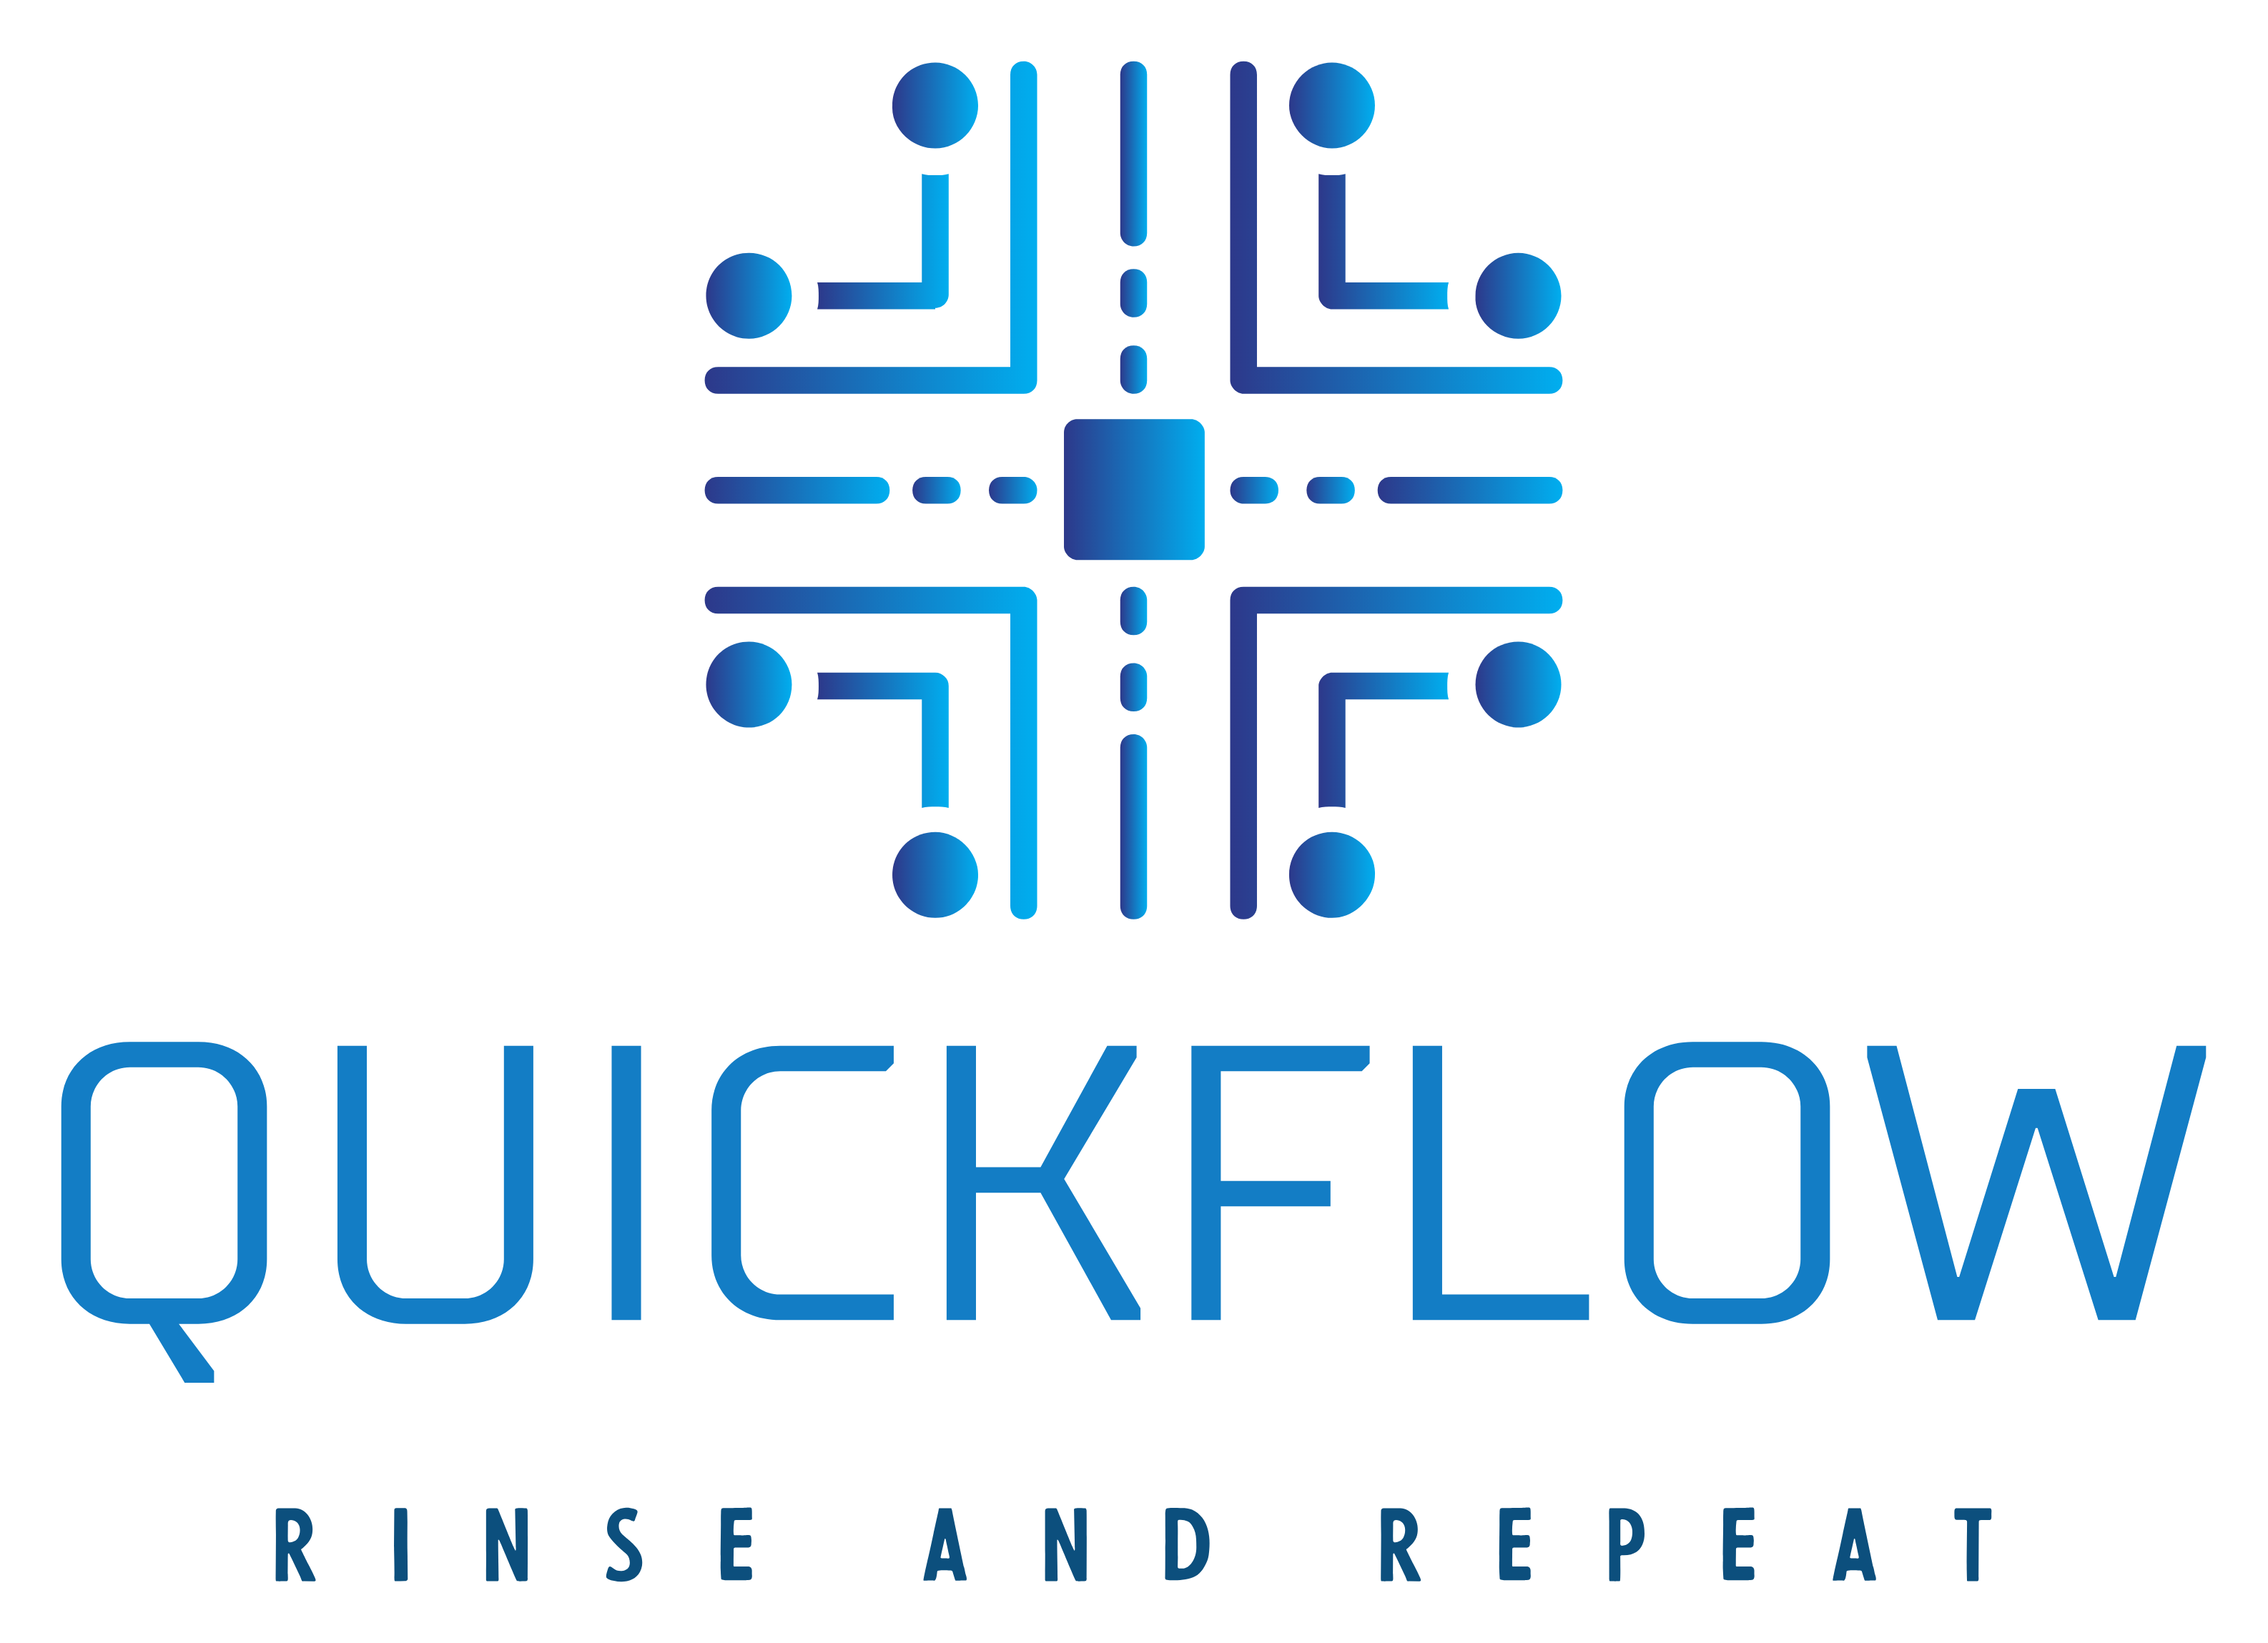 Quickflow